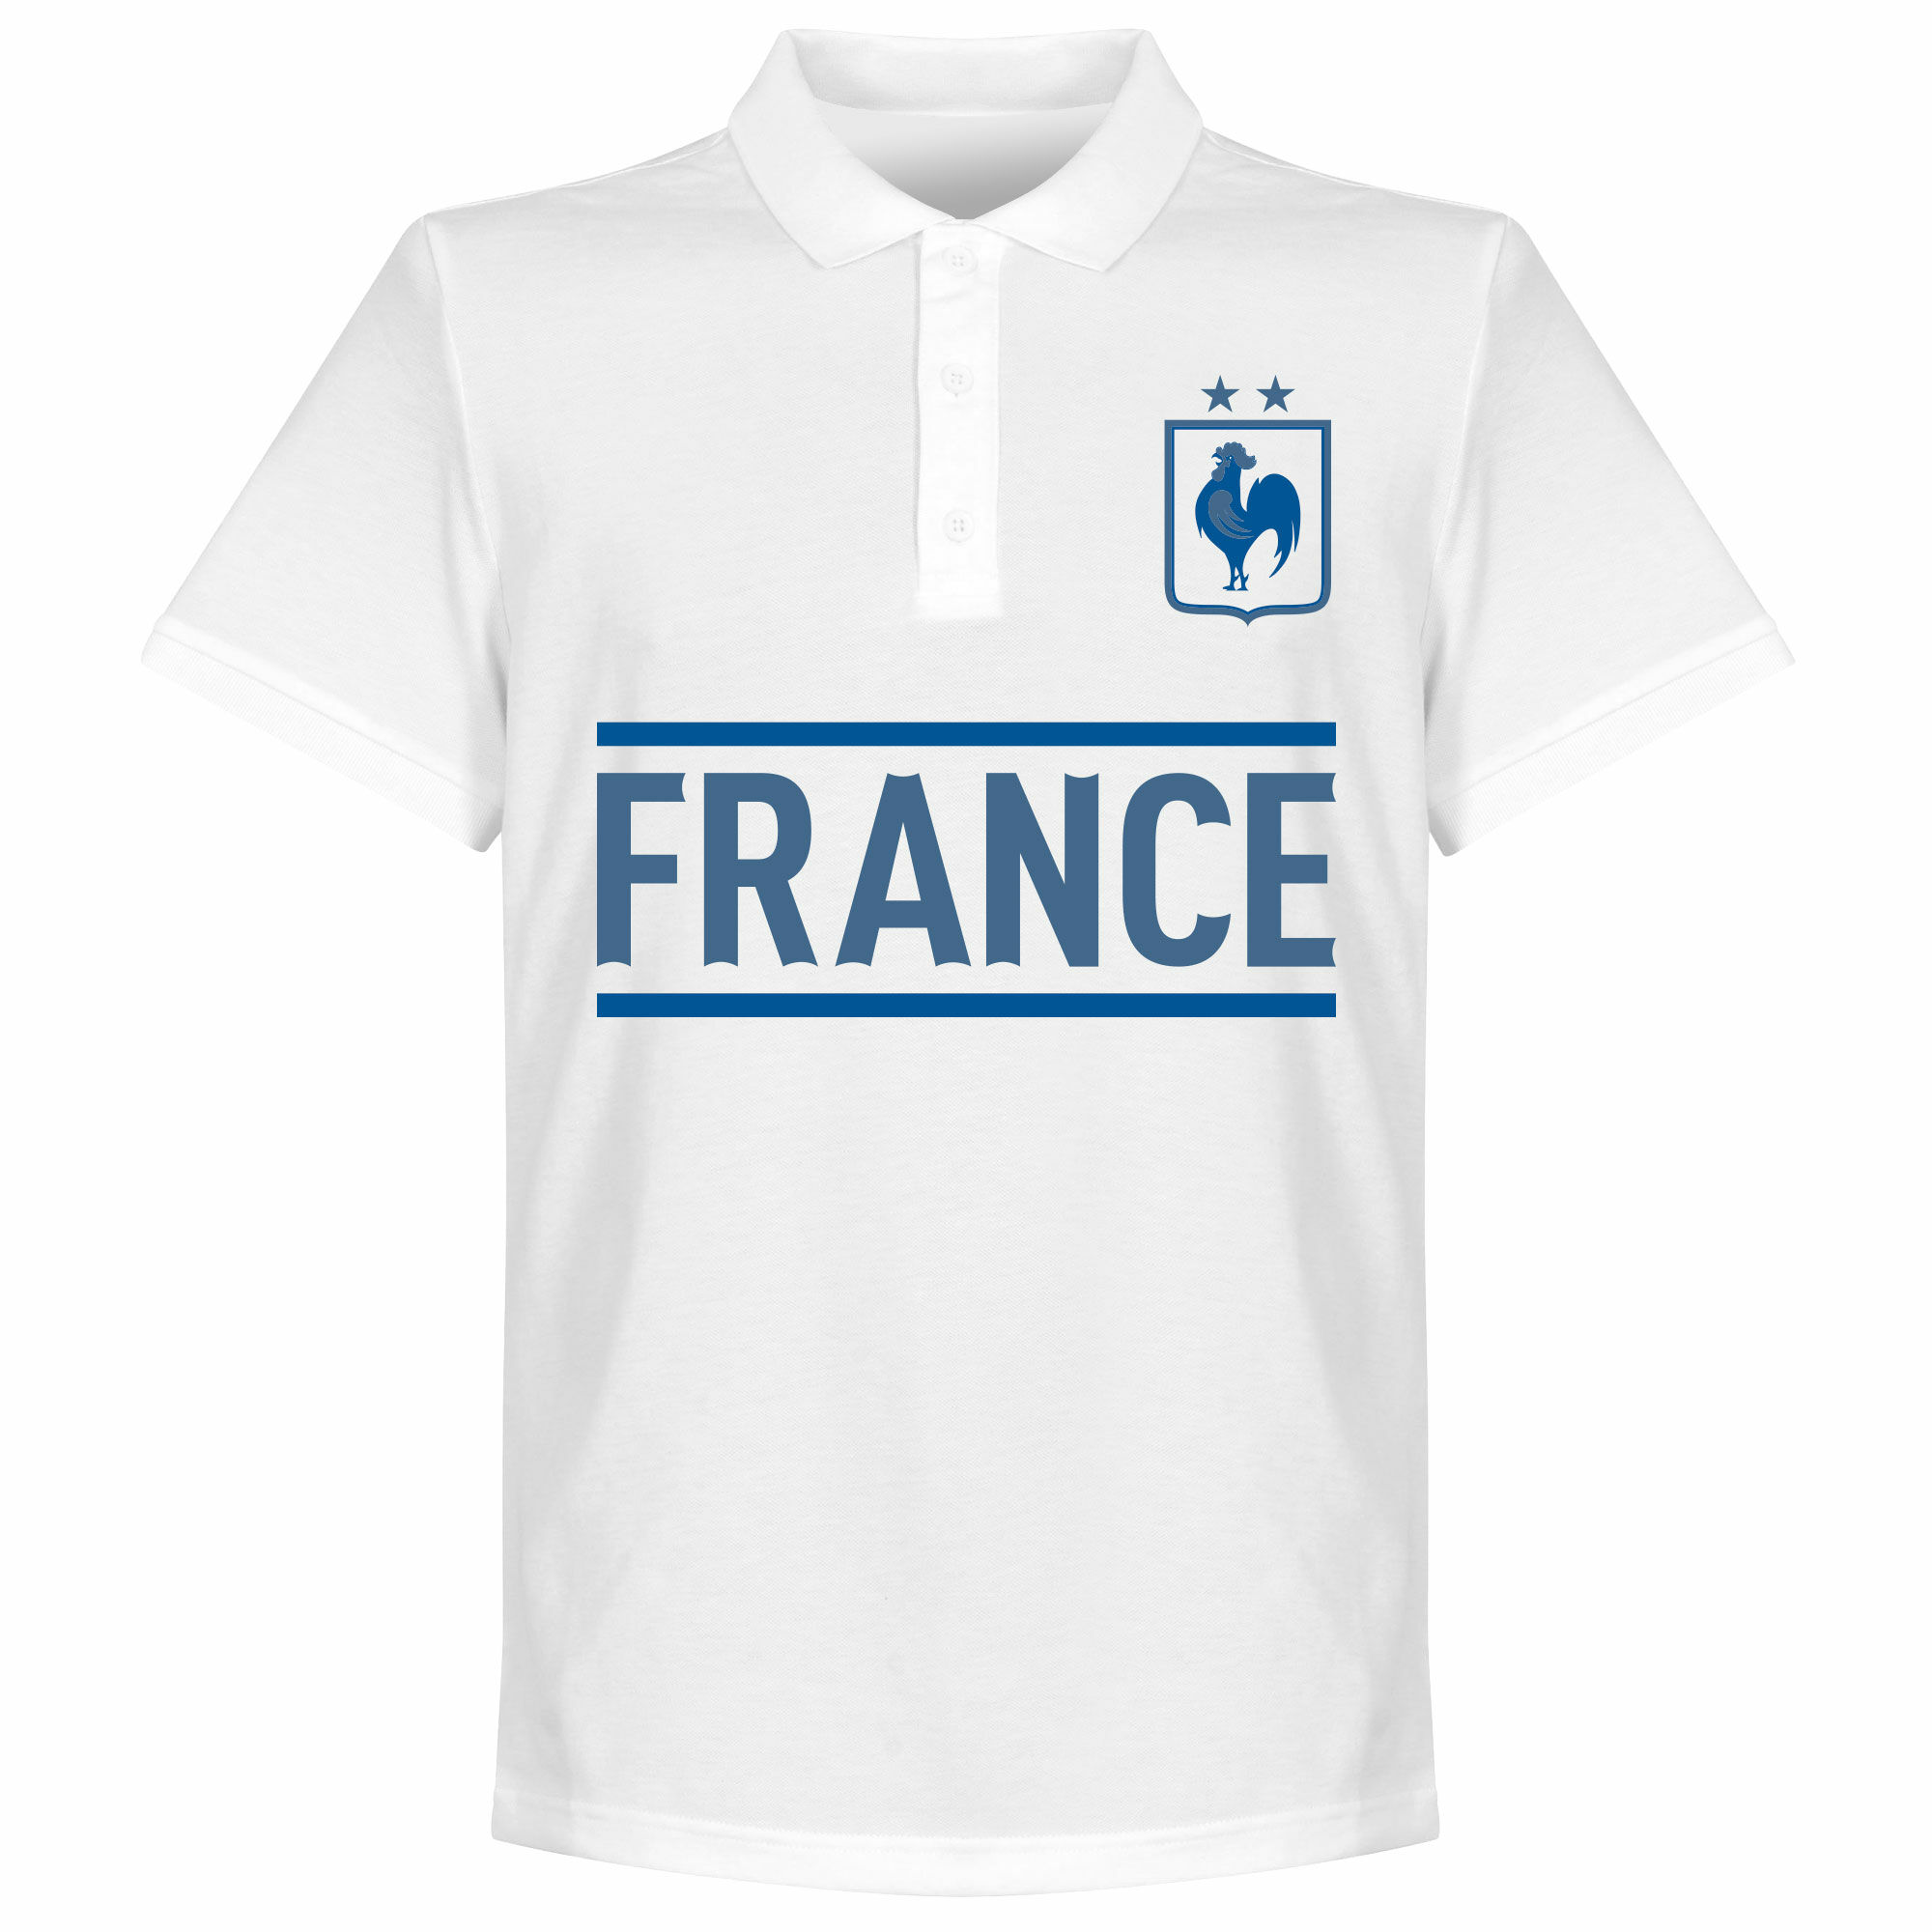 Francie - Tričko s límečkem - černobílé